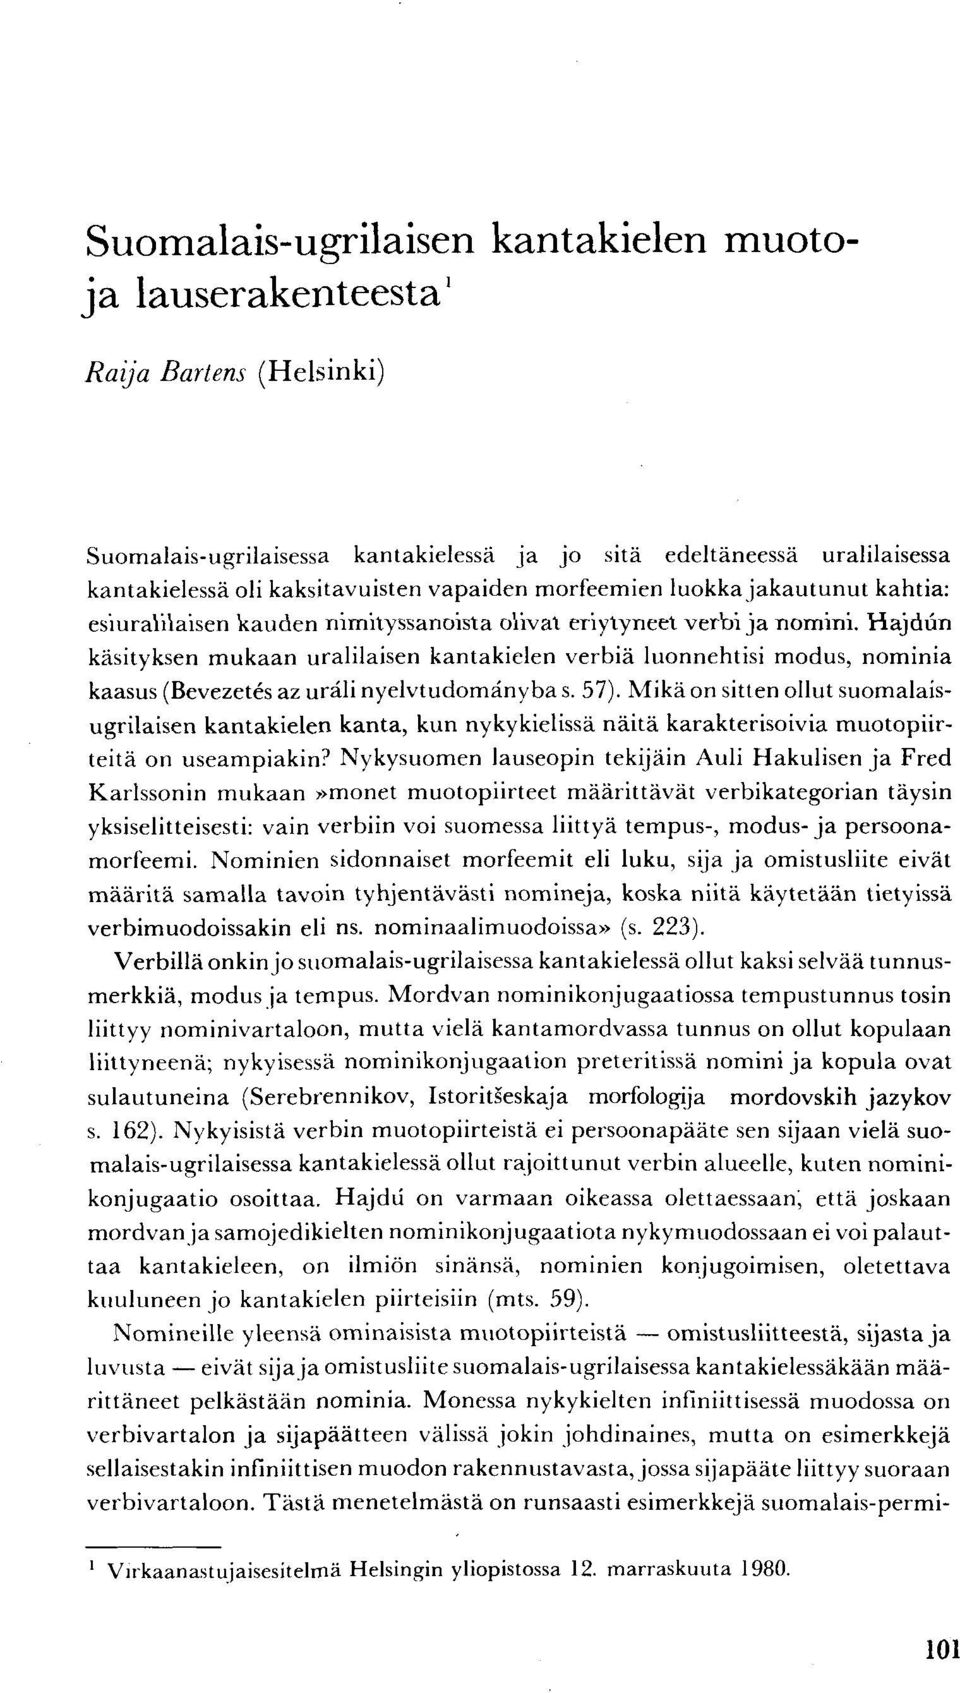 Hajdun käsityksen mukaan uralilaisen kantakielen verbiä luonnehtisi modus, nominia kaasus (Bevezetes az uräli nyelvtudomänyba s. 57).